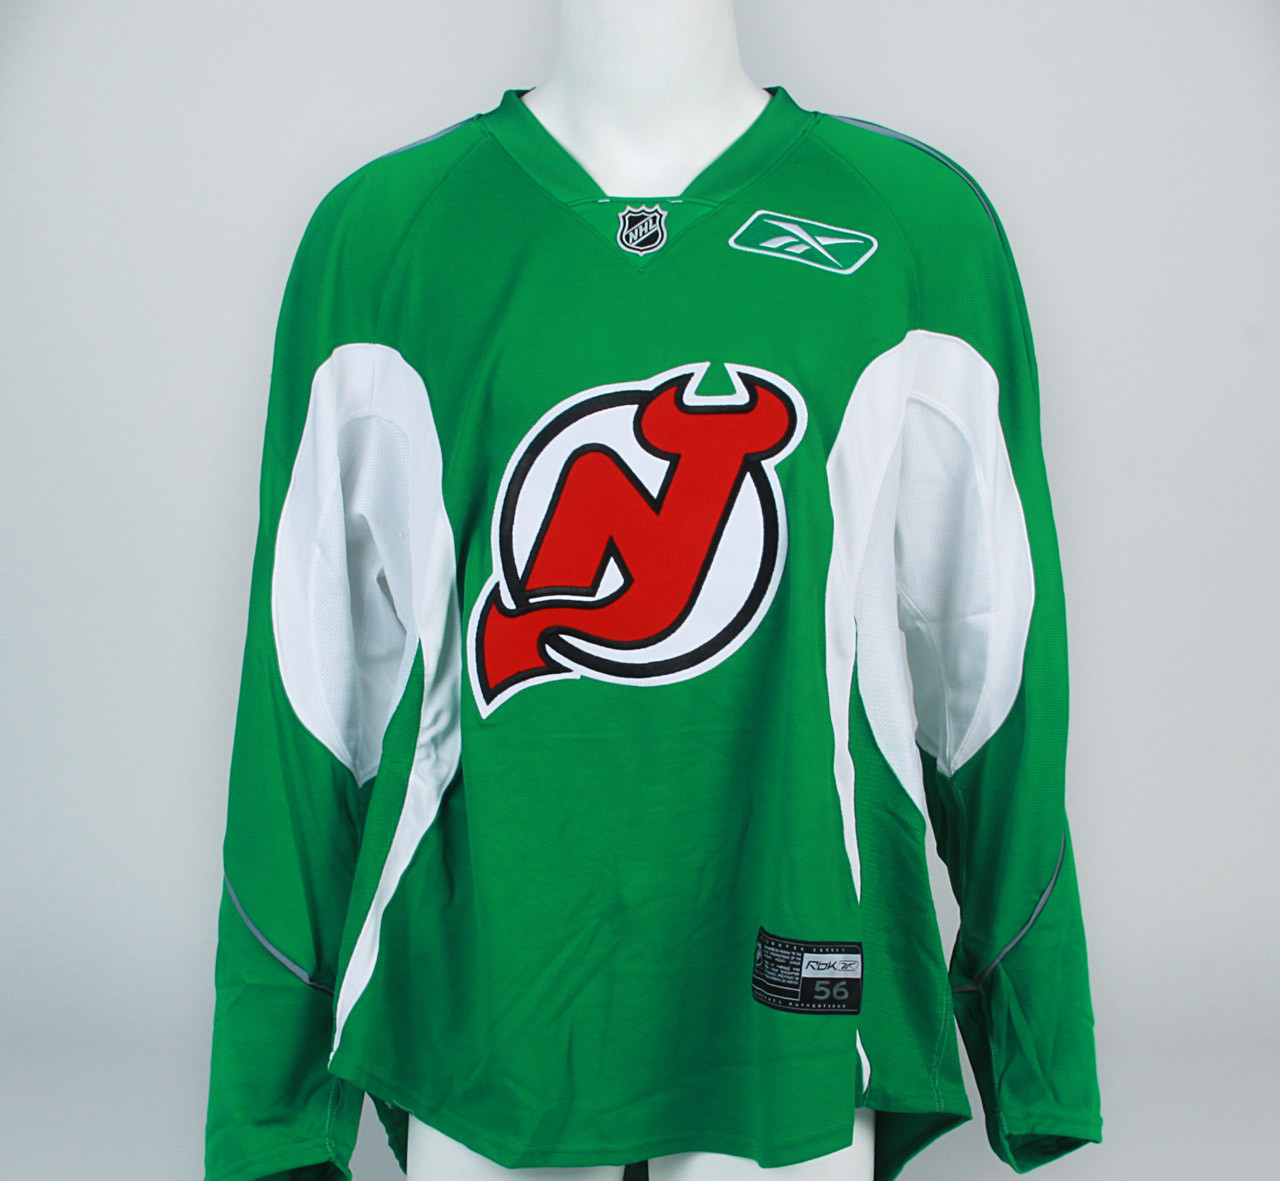 New Jersey Devils - Green Reebok Size 